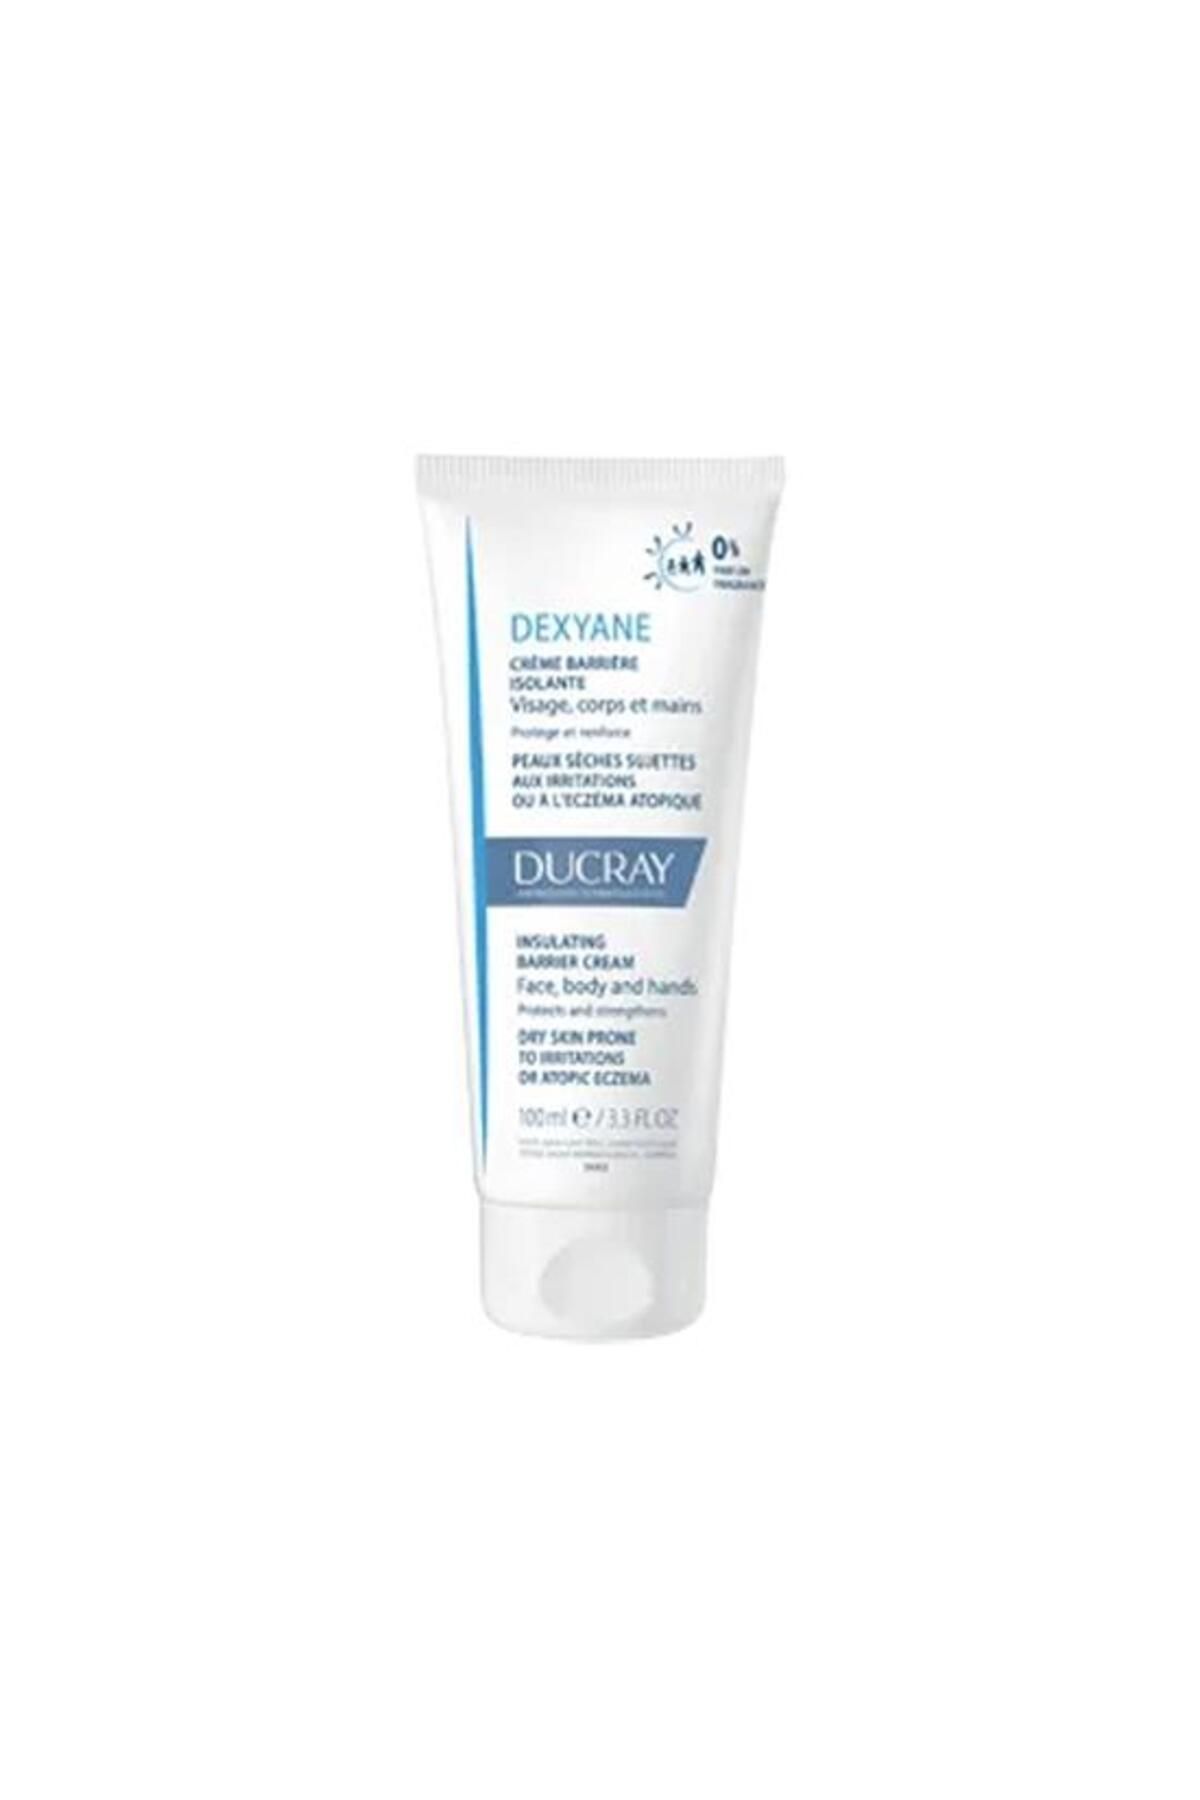 Ducray Dexyane Barrier Cream 100 ml